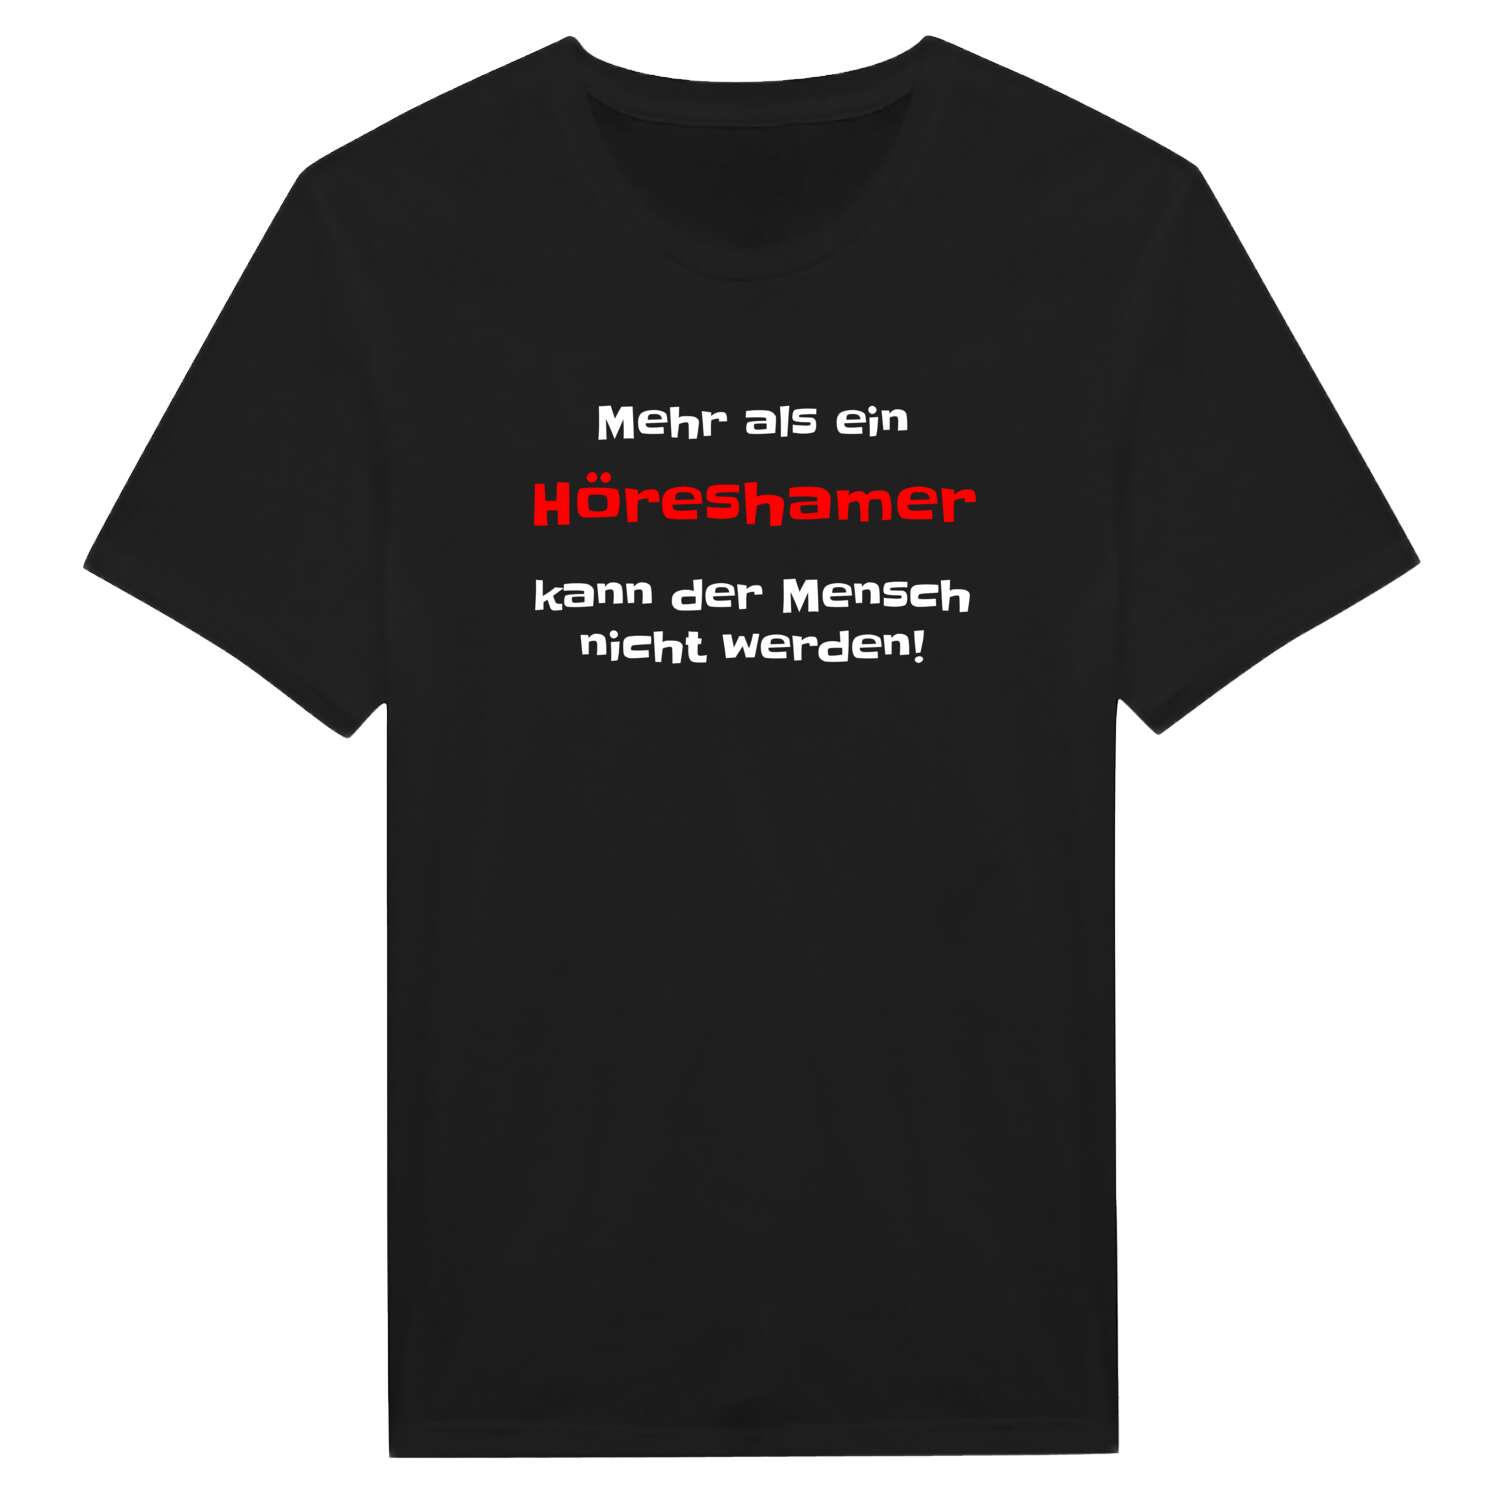 Höresham T-Shirt »Mehr als ein«